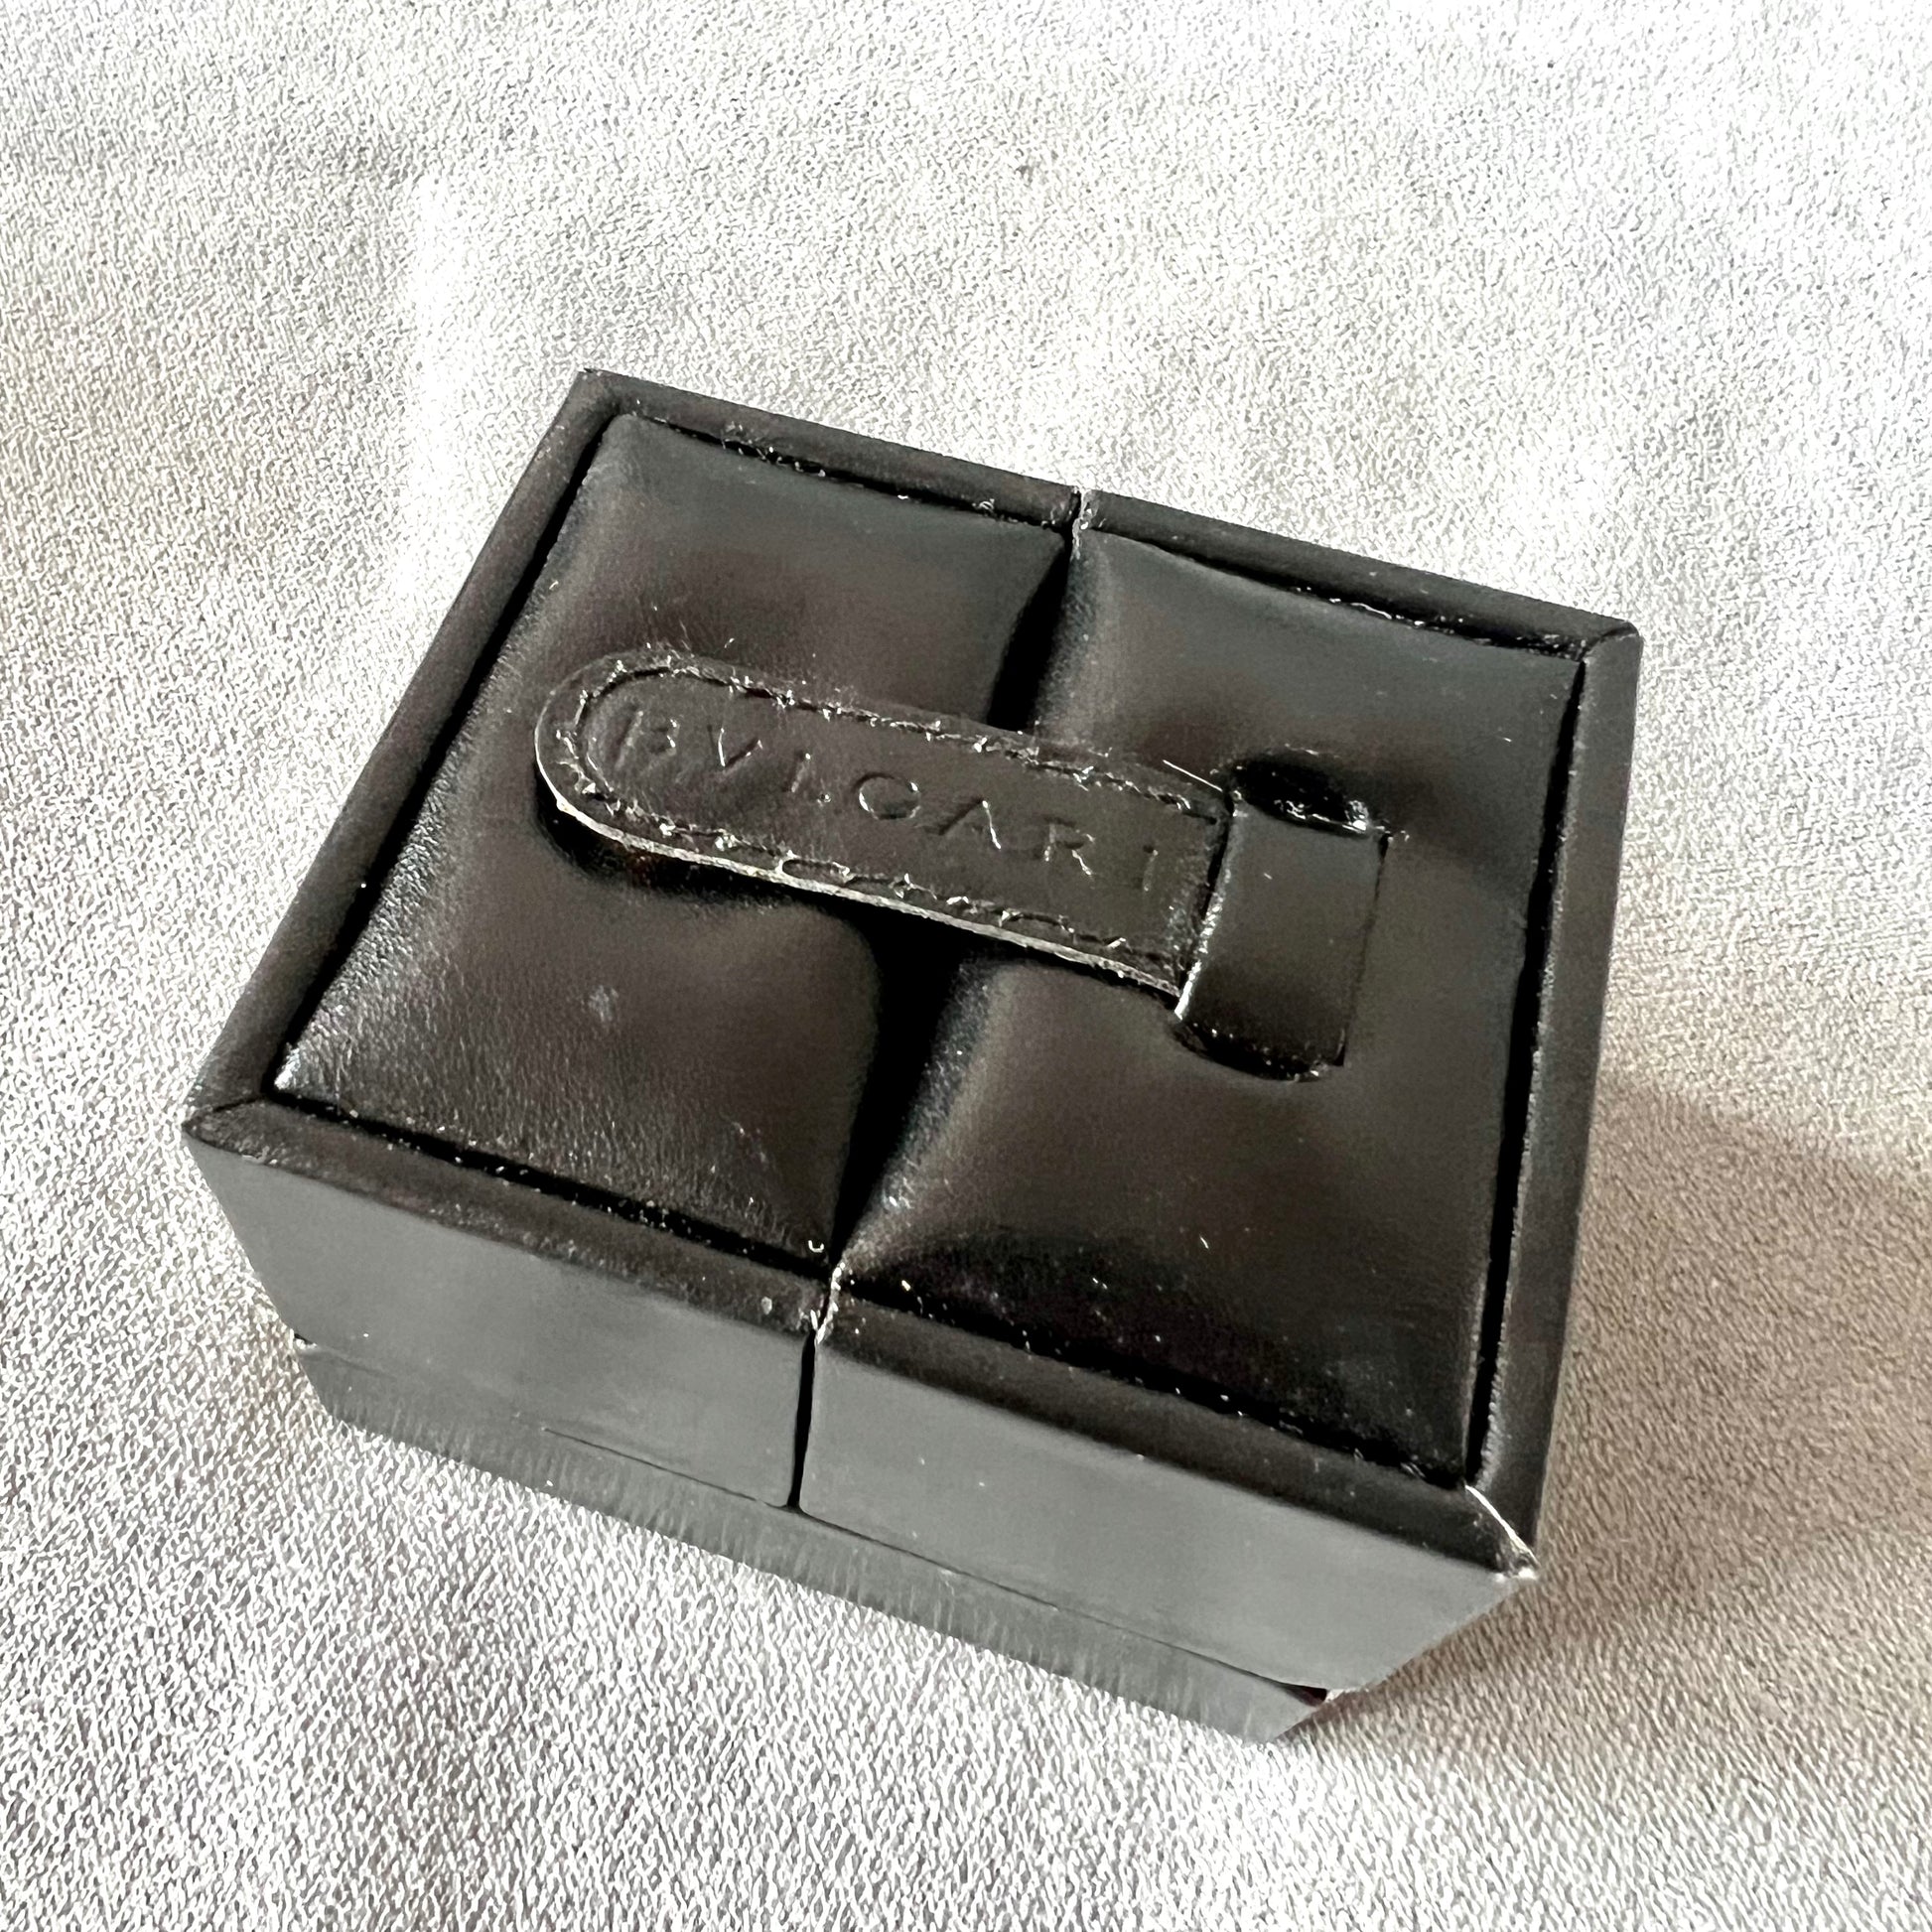 BVLGARI Black Ring/Earring Box + Outer Box 3.25x2.75x2.35 inches